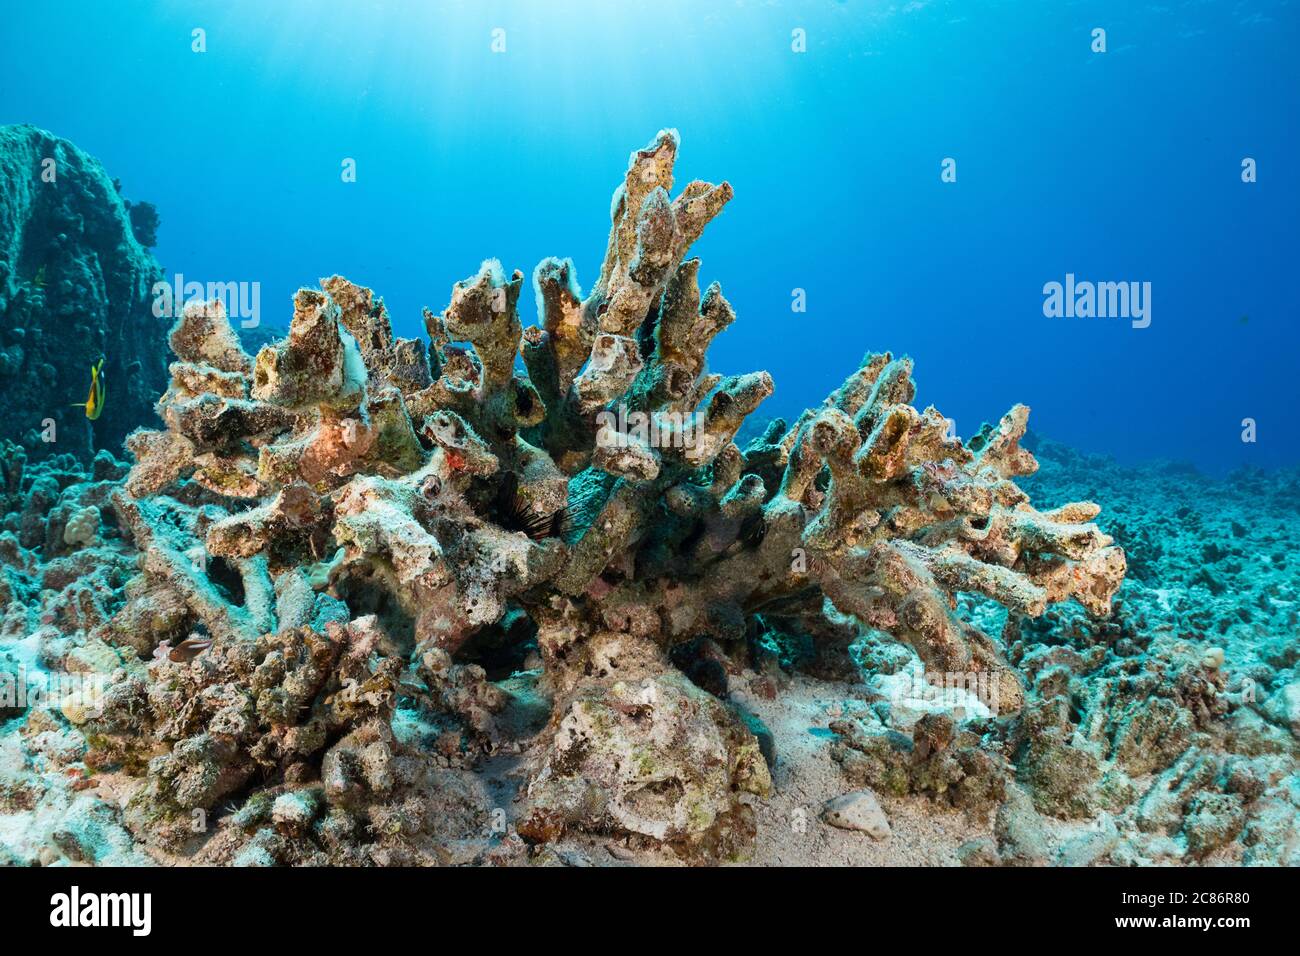 El esqueleto de una colonia de coral más antesista que blanqueó y murió durante el evento de el Nino de 2015, ahora está cubierto de algas incrustantes y erosionando, Hawai Foto de stock